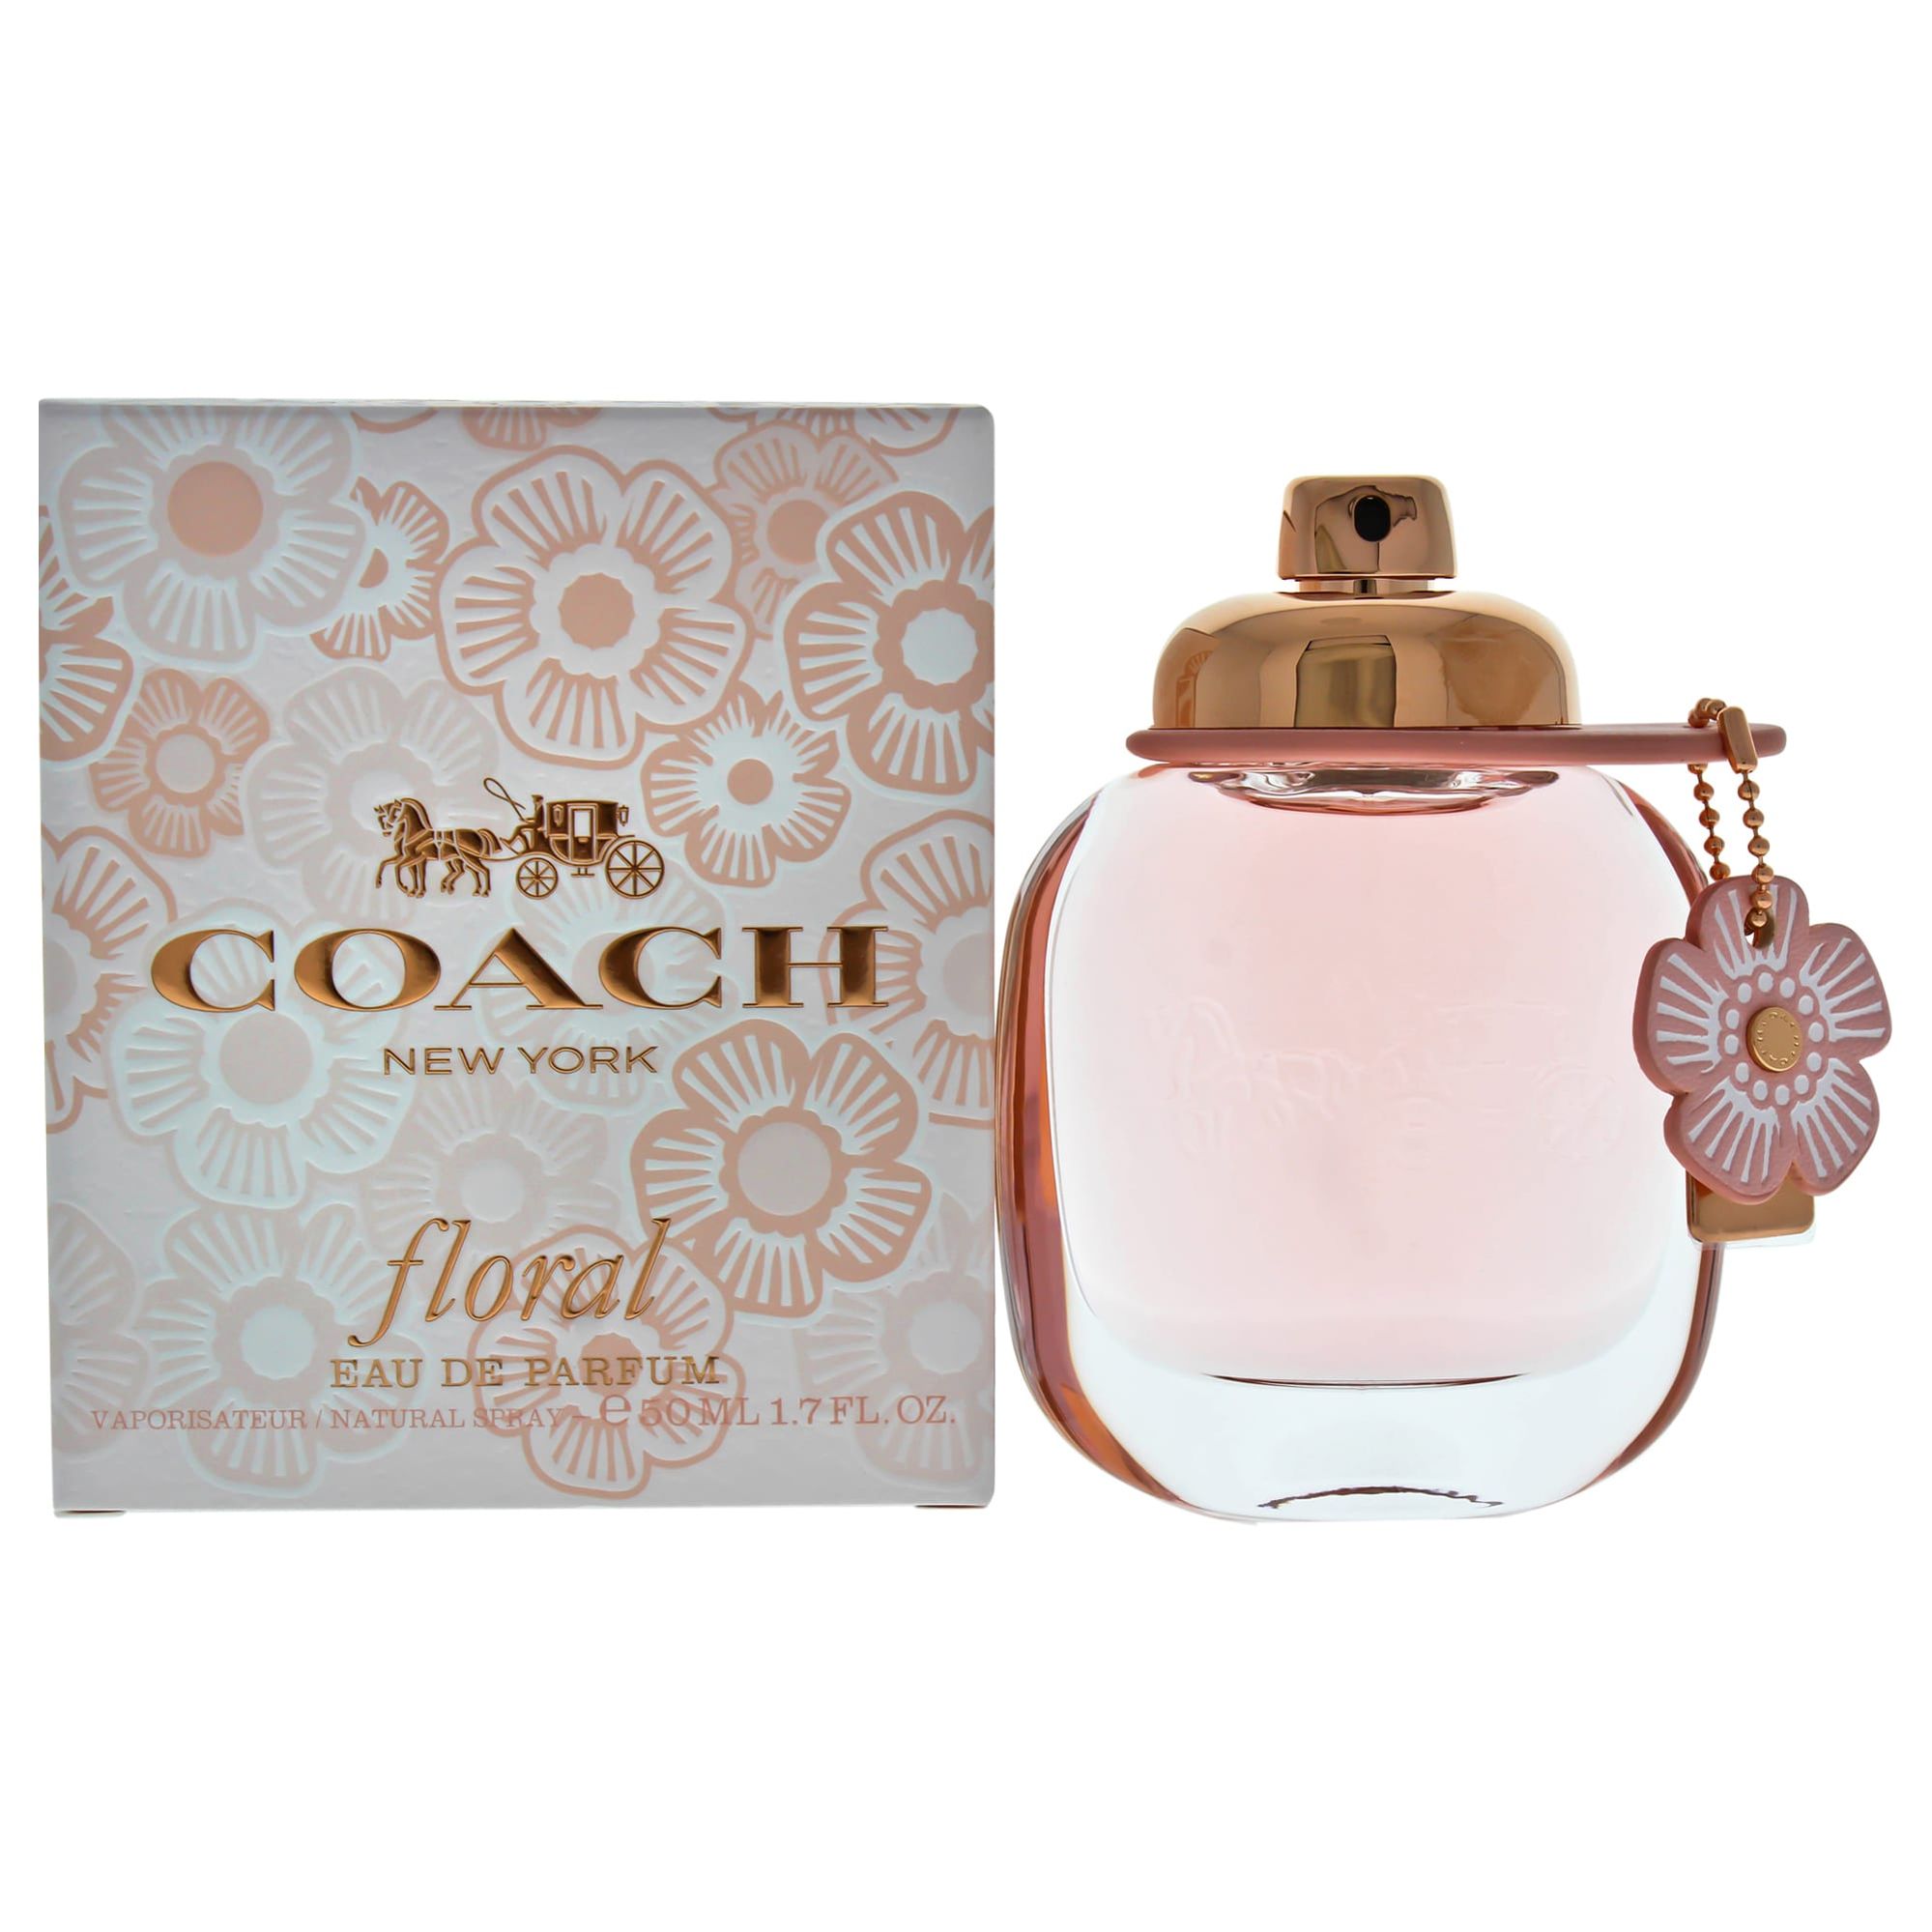 Coach  Floral  Eau de Parfum  90ml